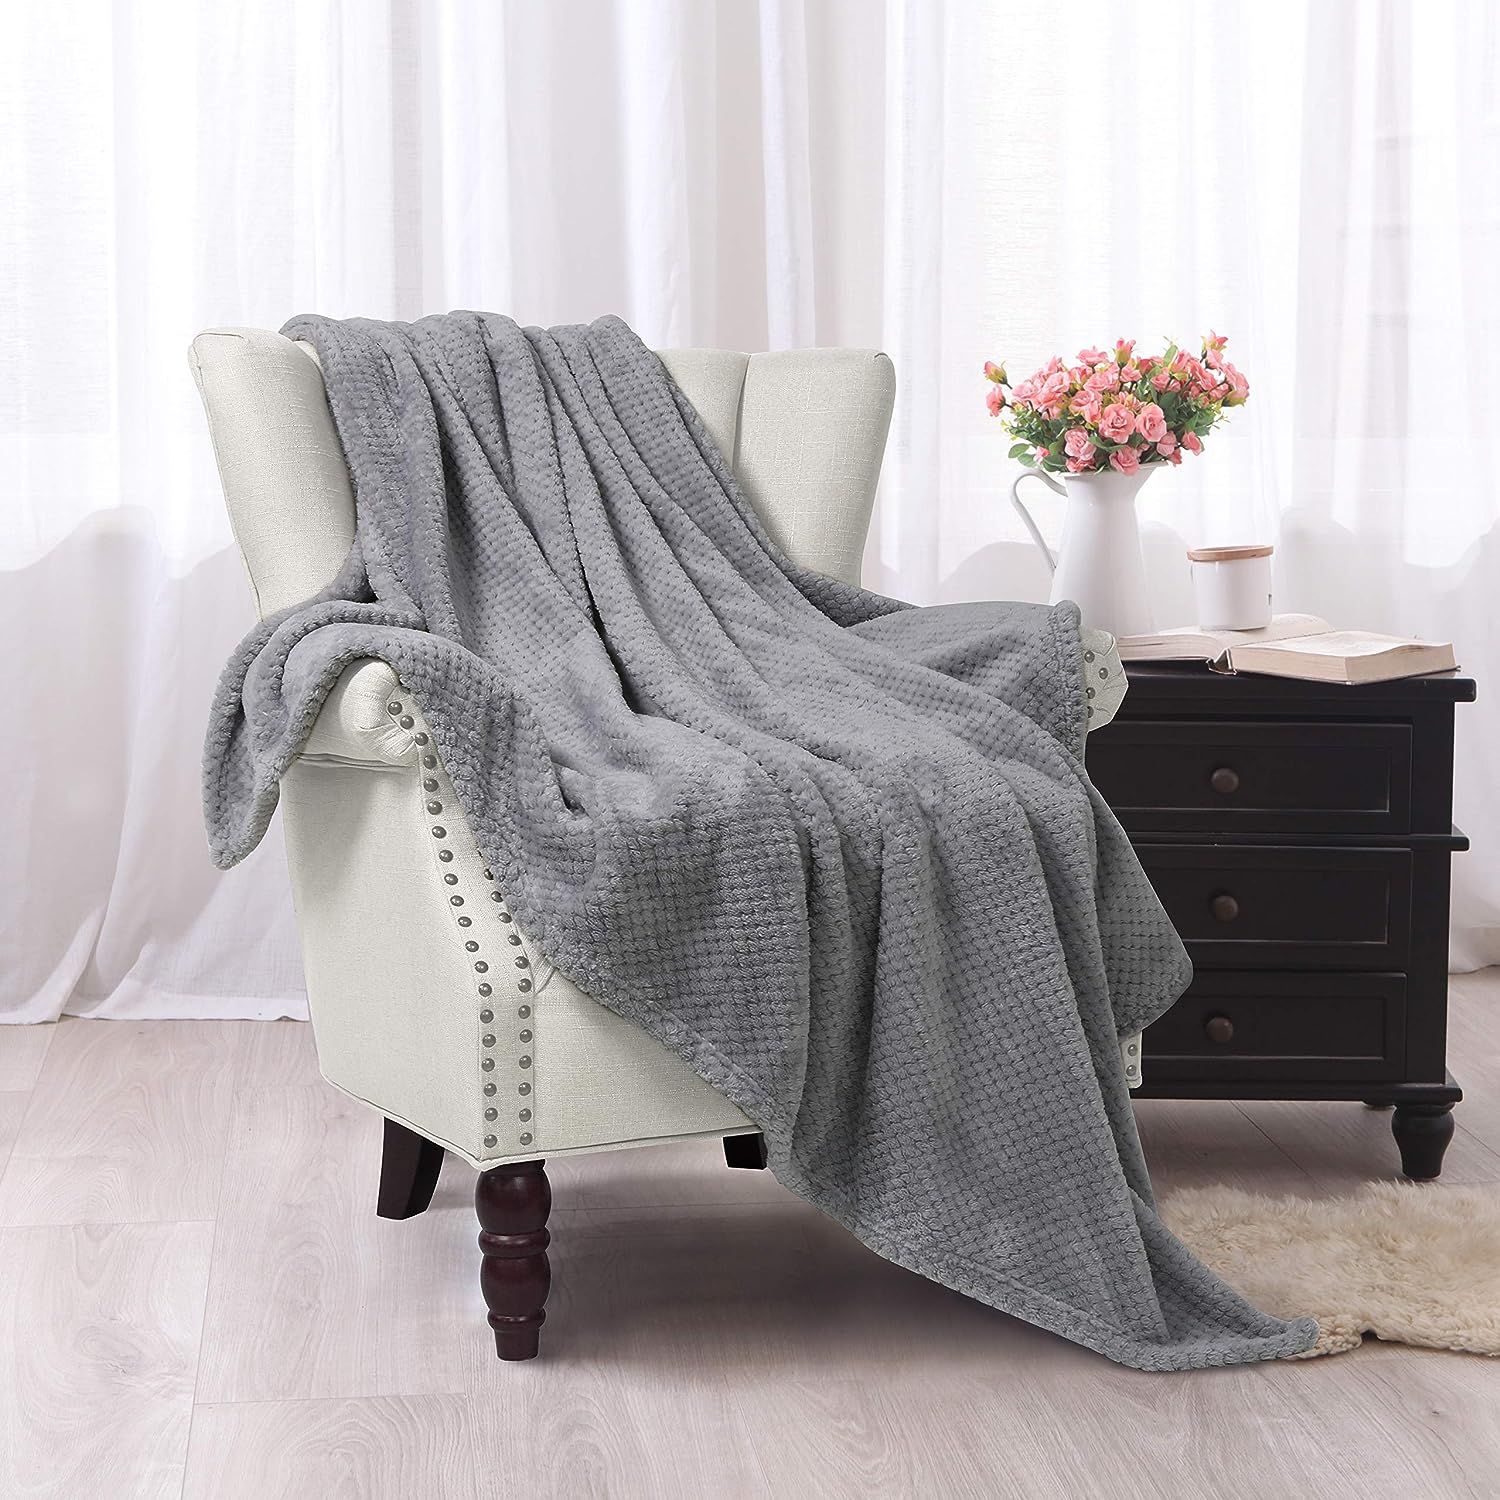 Exclusivo Mezcla Waffle Textured Soft Fleece Blanket, Large Throw Blanket(Light Grey, 50 x 70 inc... | Amazon (US)